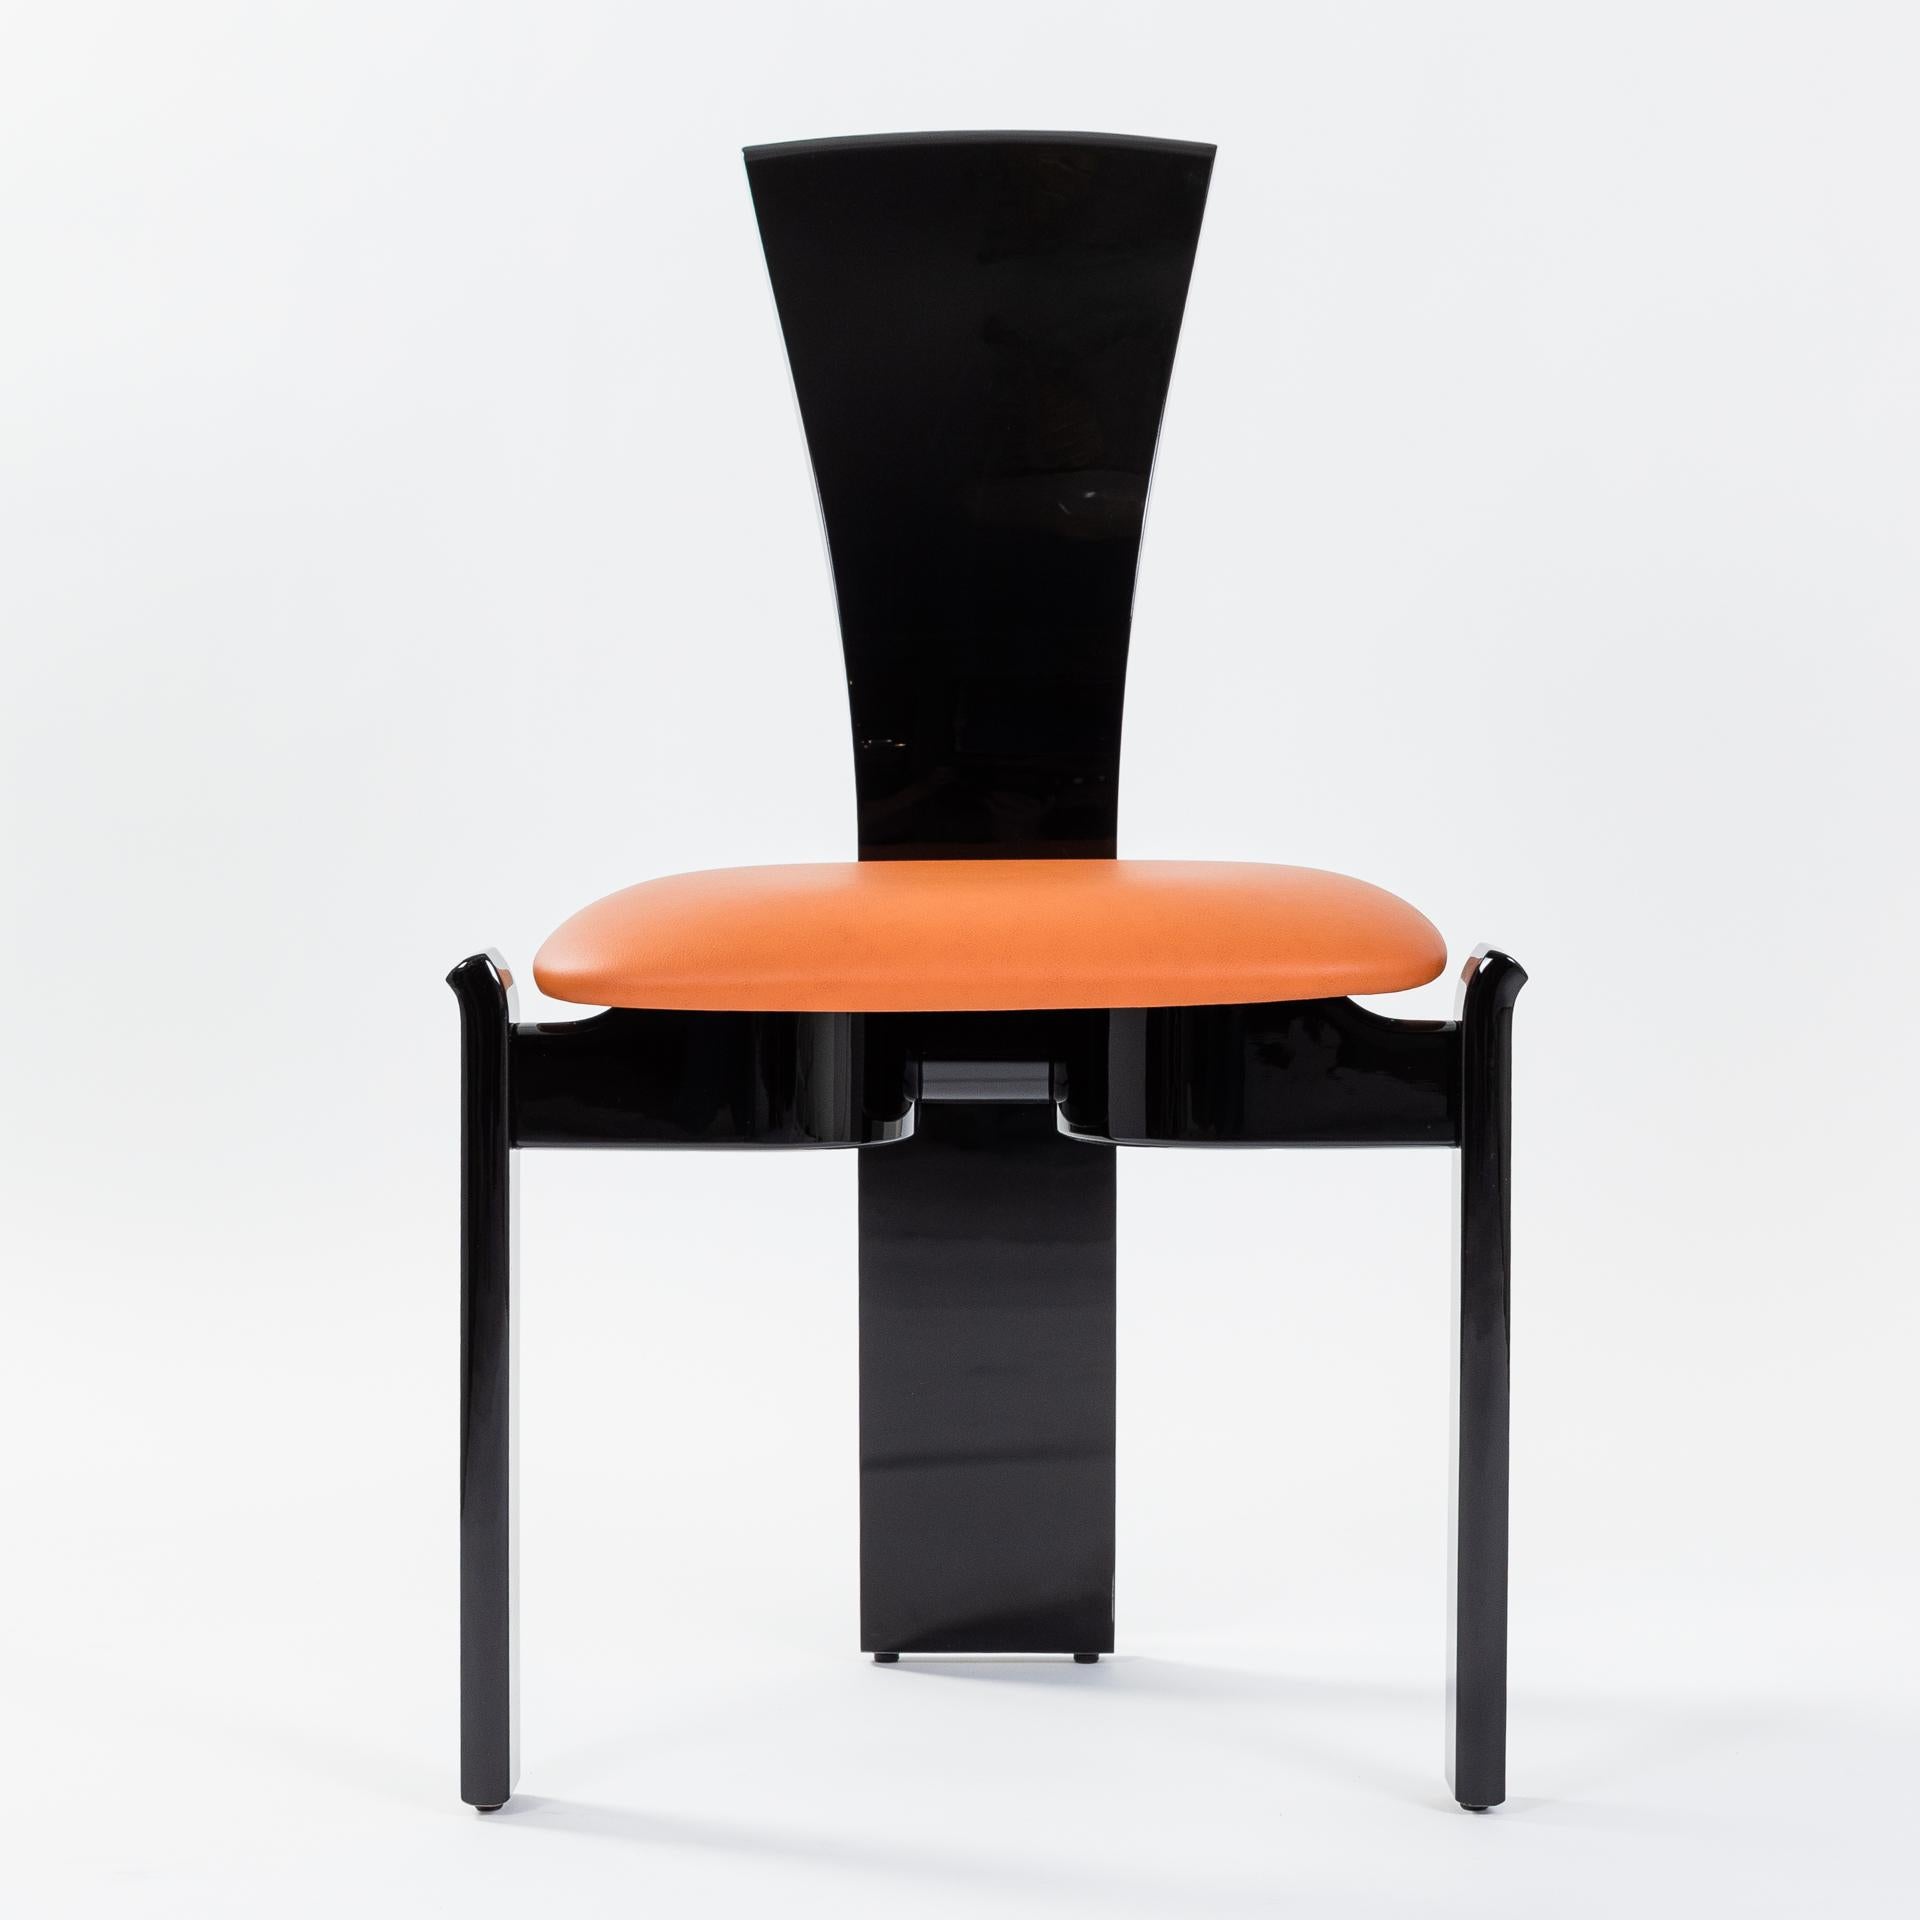 6 chaises au design fantastique et concis et aux lignes claires, attribuées à l'architecte et designer français Jean Michel Wilmotte.
Le dossier conique, de forme ergonomique, rend la chaise extrêmement confortable et descend jusqu'au sol,